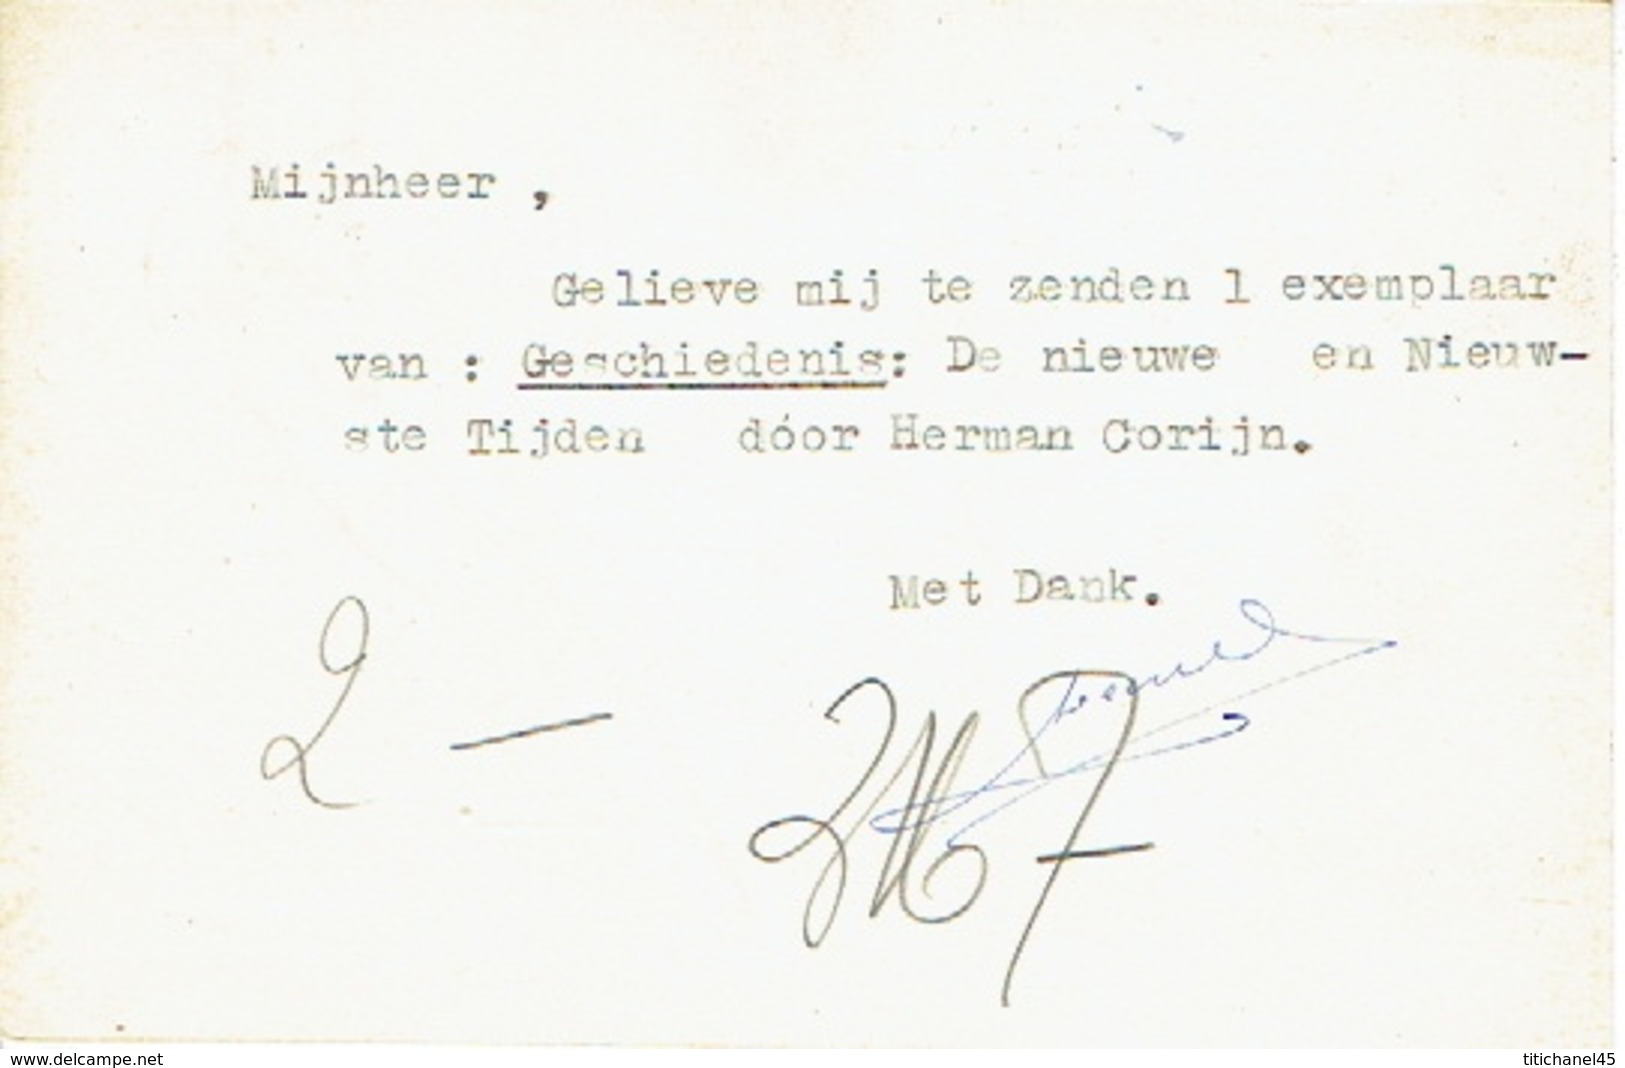 Carte Postale Publicitaire CELLES (HAINAUT) 1953 - Edmond LEBAILLY - Imprimerie-Papeterie-Librairie - Celles